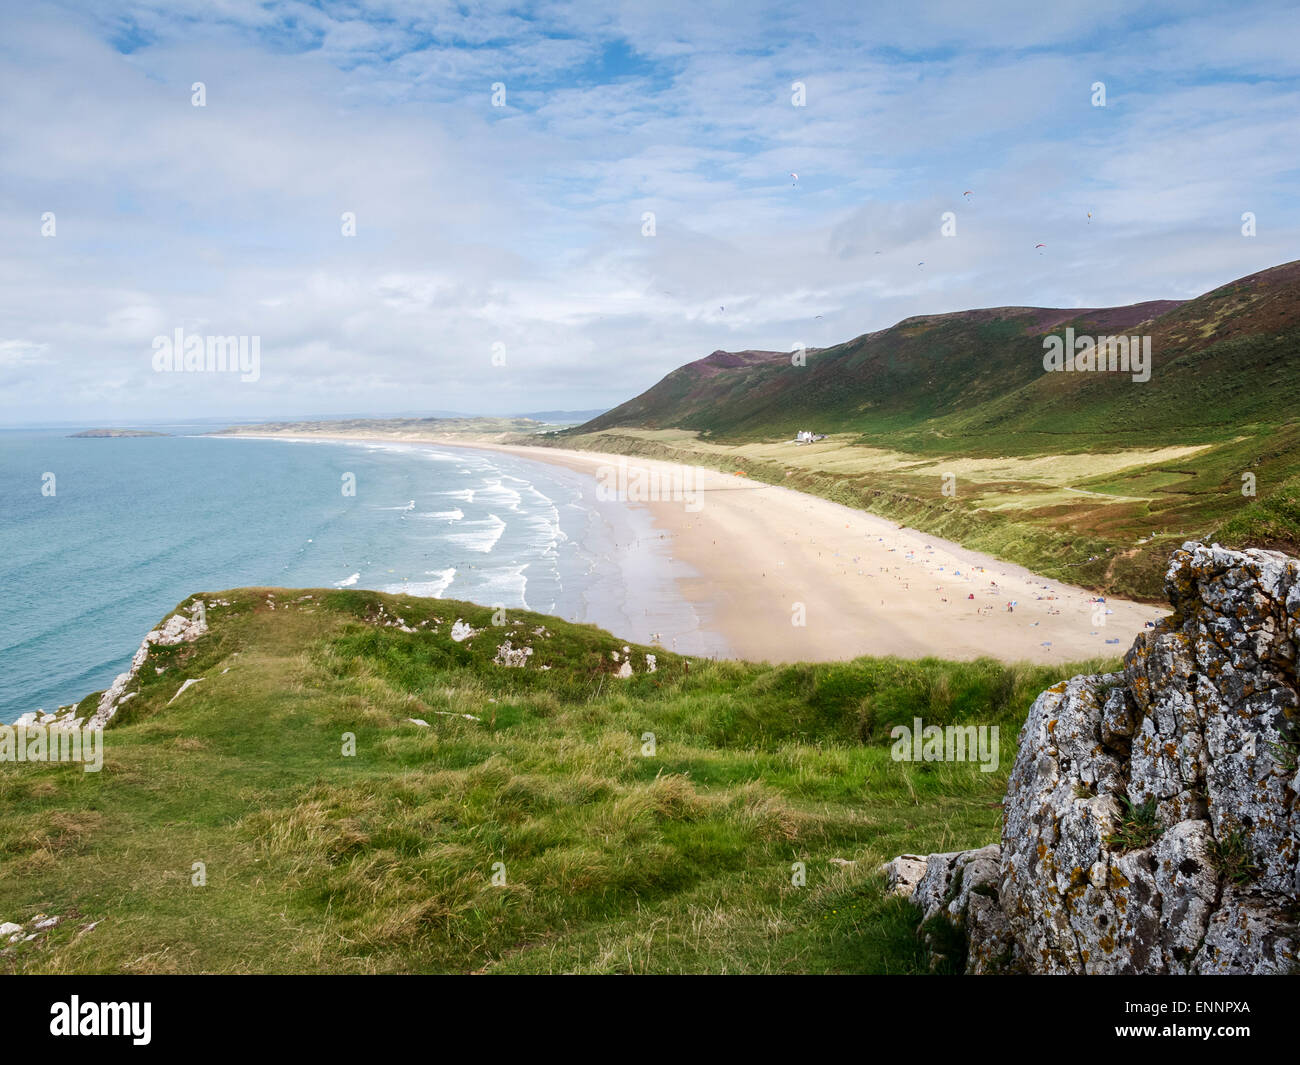 Afficher le long de la plage de Rhossili Bay, Gower, au Pays de Galles Banque D'Images